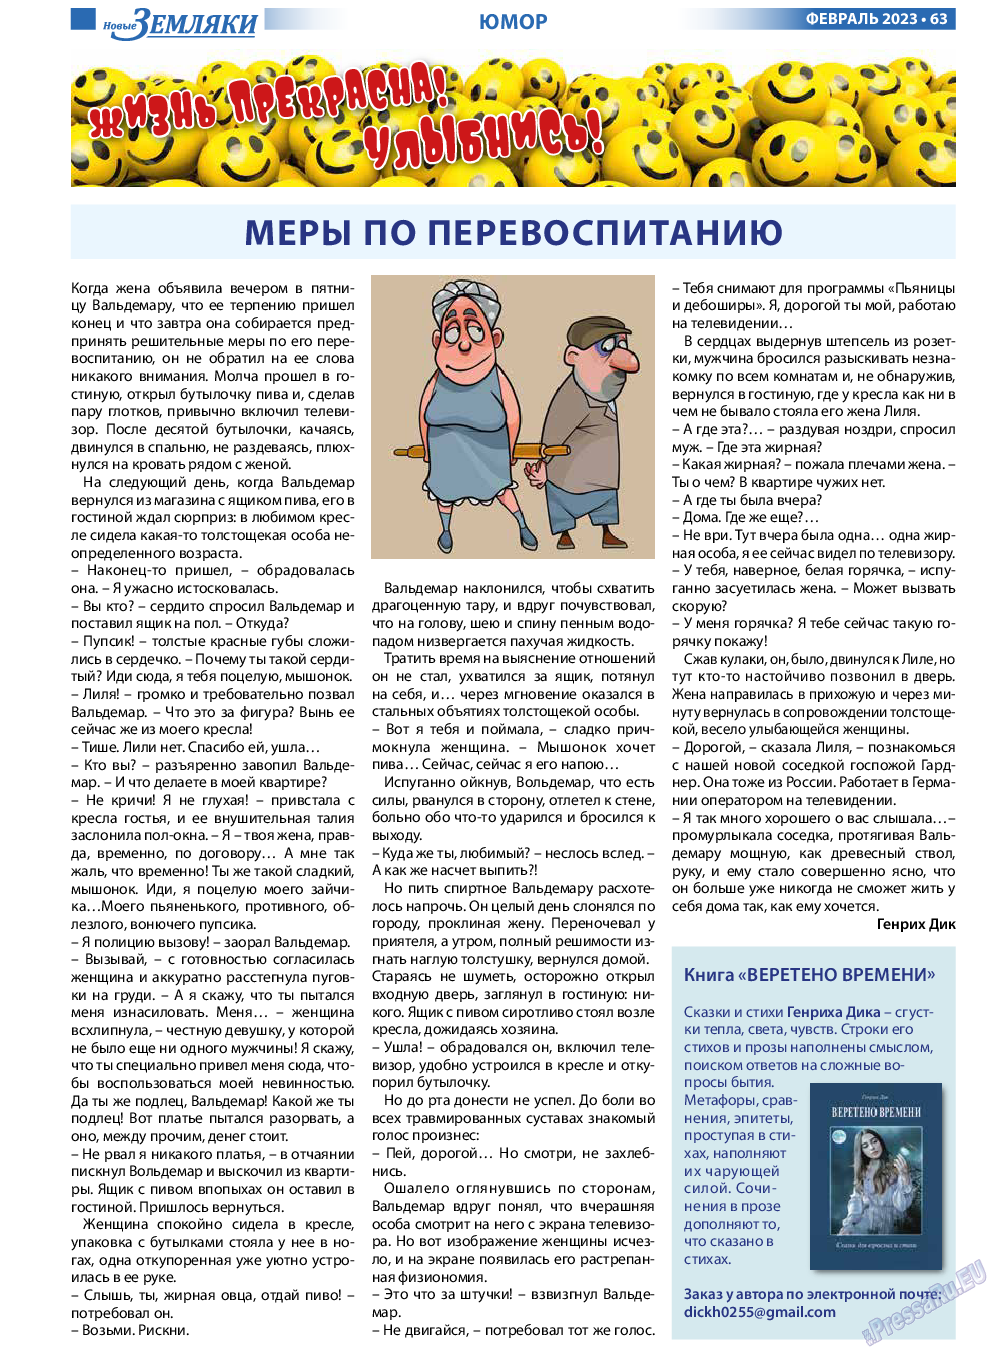 Новые Земляки, газета. 2023 №2 стр.63